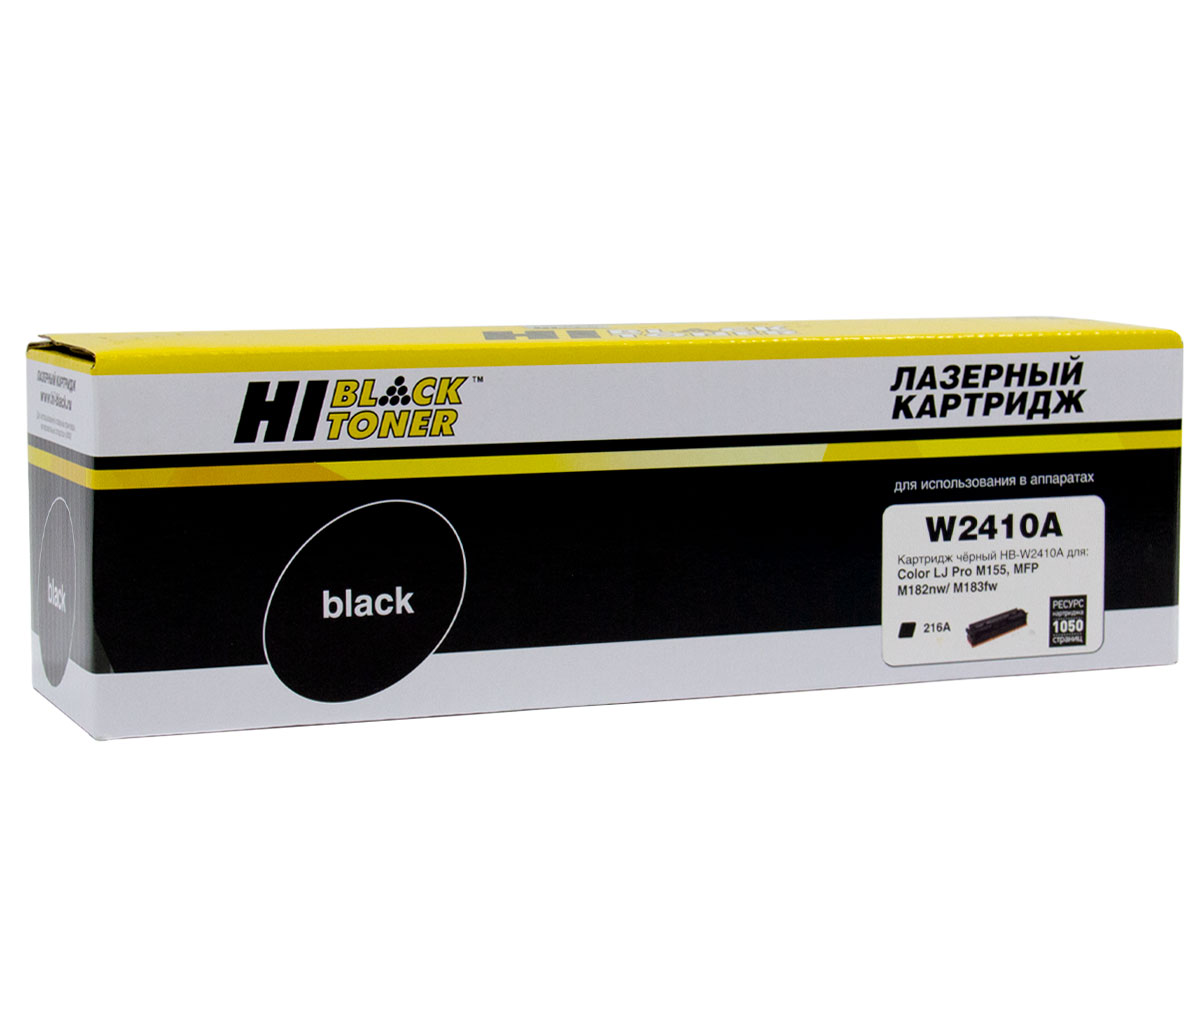 Картридж Hi-Black (HB-W2410A) для HP CLJ Pro M155a/MFPM182n/M183fw, Bk, 1,05K, без чипа